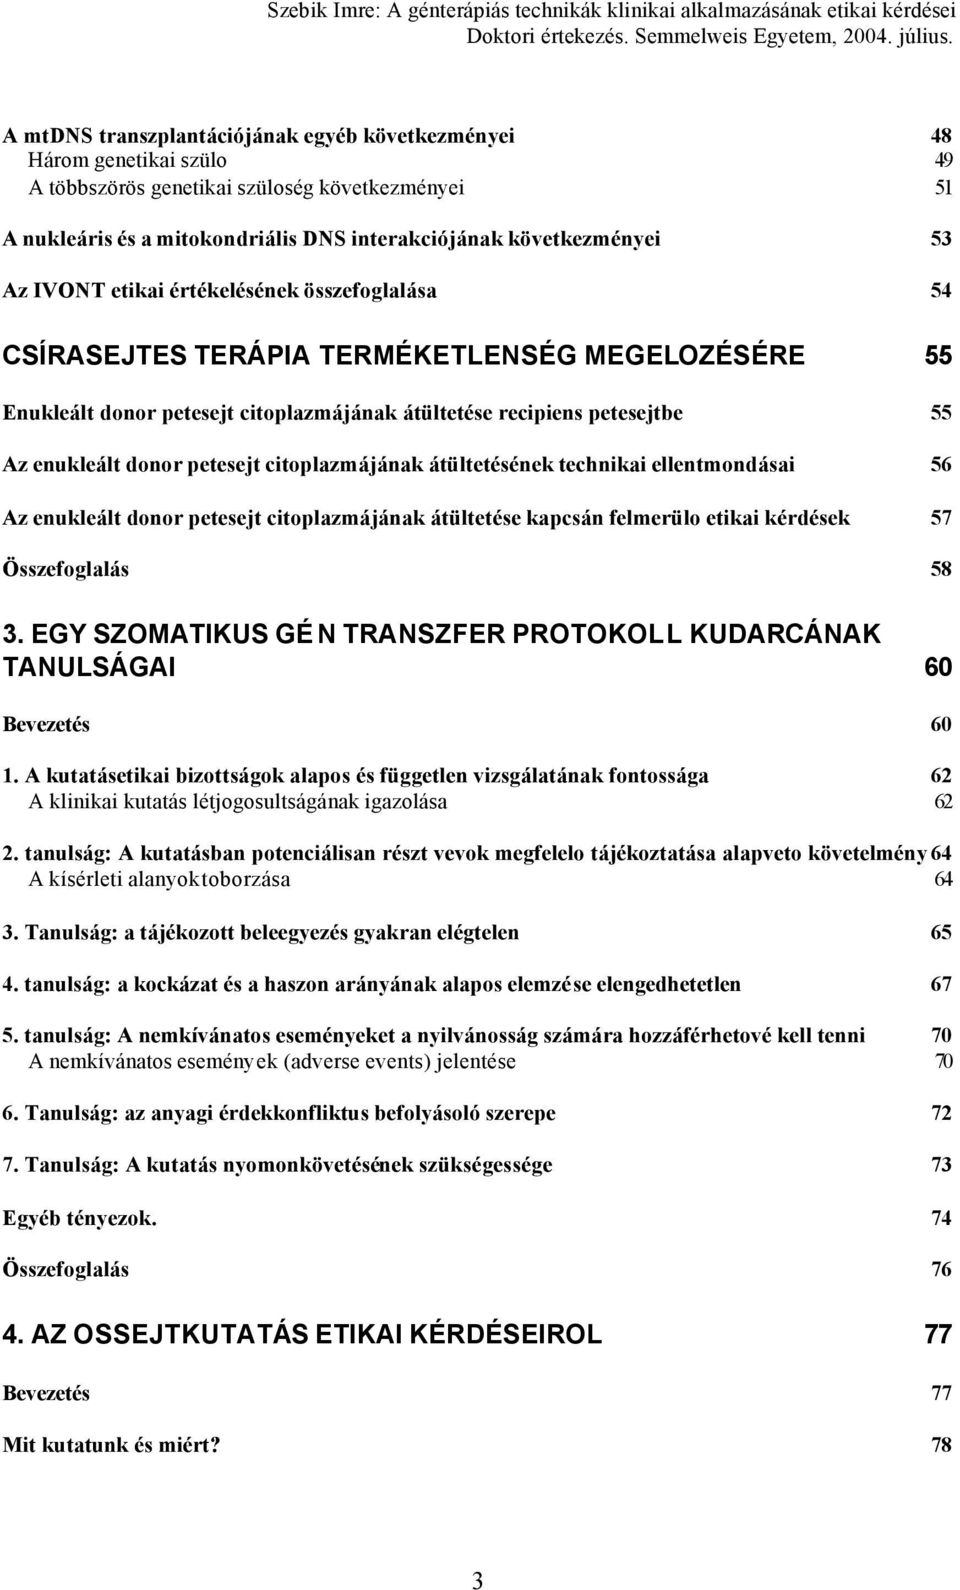 petesejt citoplazmájának átültetésének technikai ellentmondásai 56 Az enukleált donor petesejt citoplazmájának átültetése kapcsán felmerülo etikai kérdések 57 Összefoglalás 58 3.